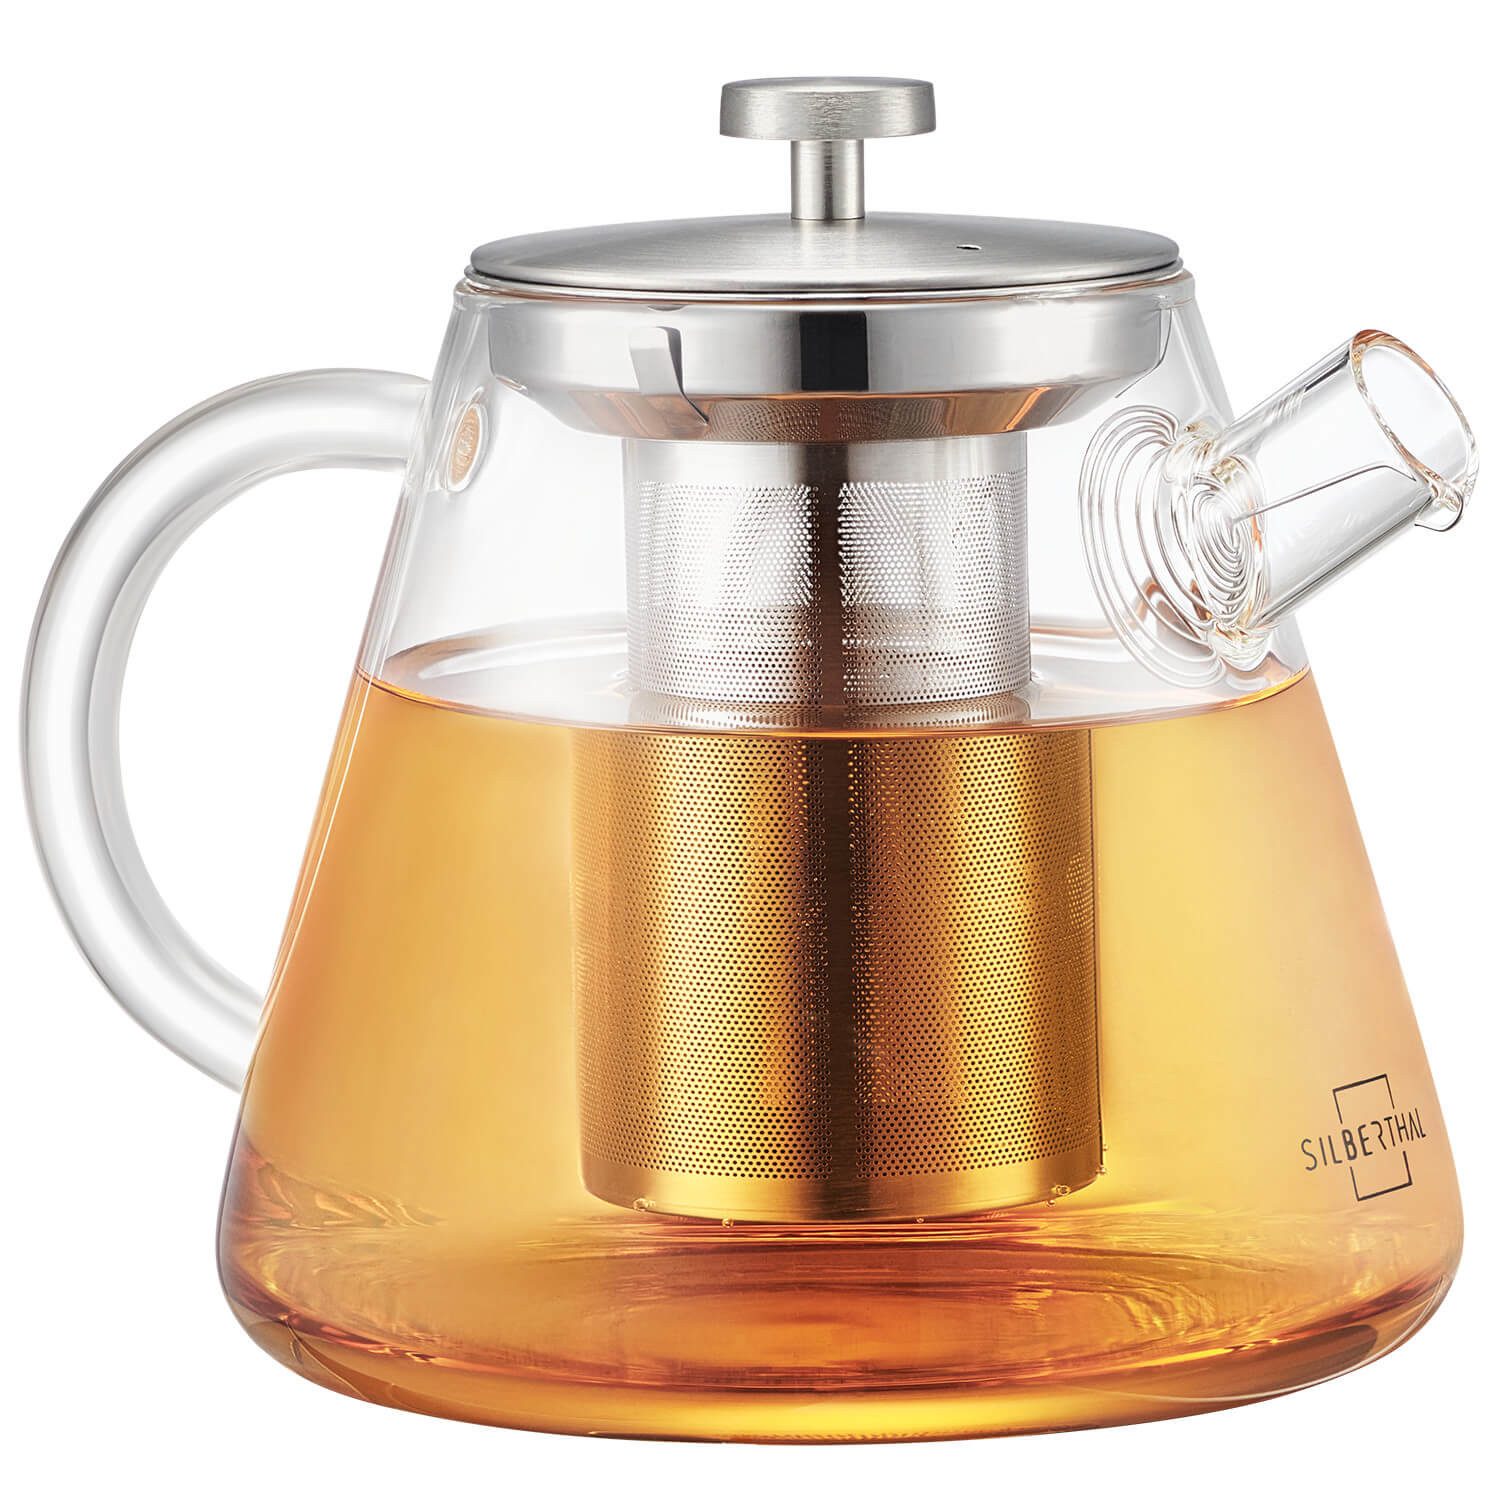 SILBERTHAL Teekanne Teekanne Glas mit Siebeinsatz 1.5L, 1.5 l, Hitzebeständiges Glas geeignet für E-Herd, Teewärmer & Gasherd